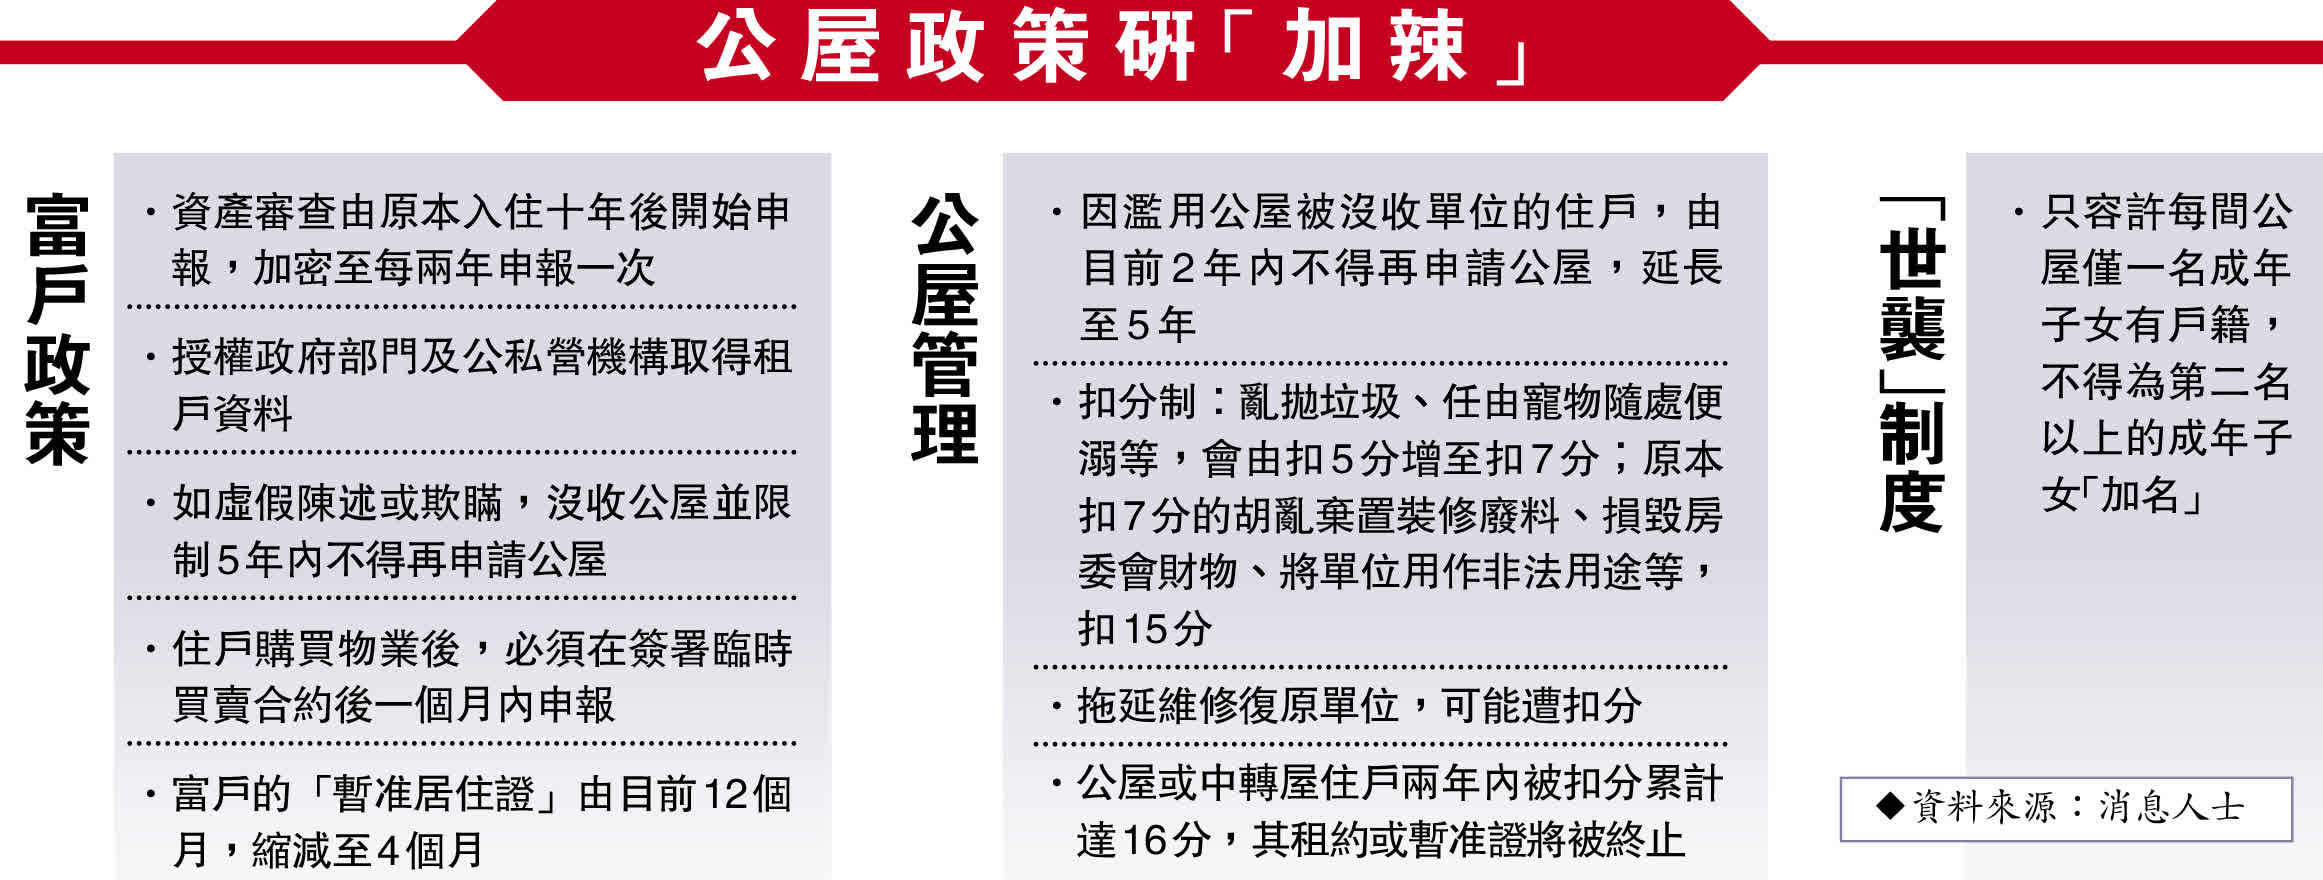 房委會擬收緊公屋政策資產兩年一申報- 香港- 香港文匯網